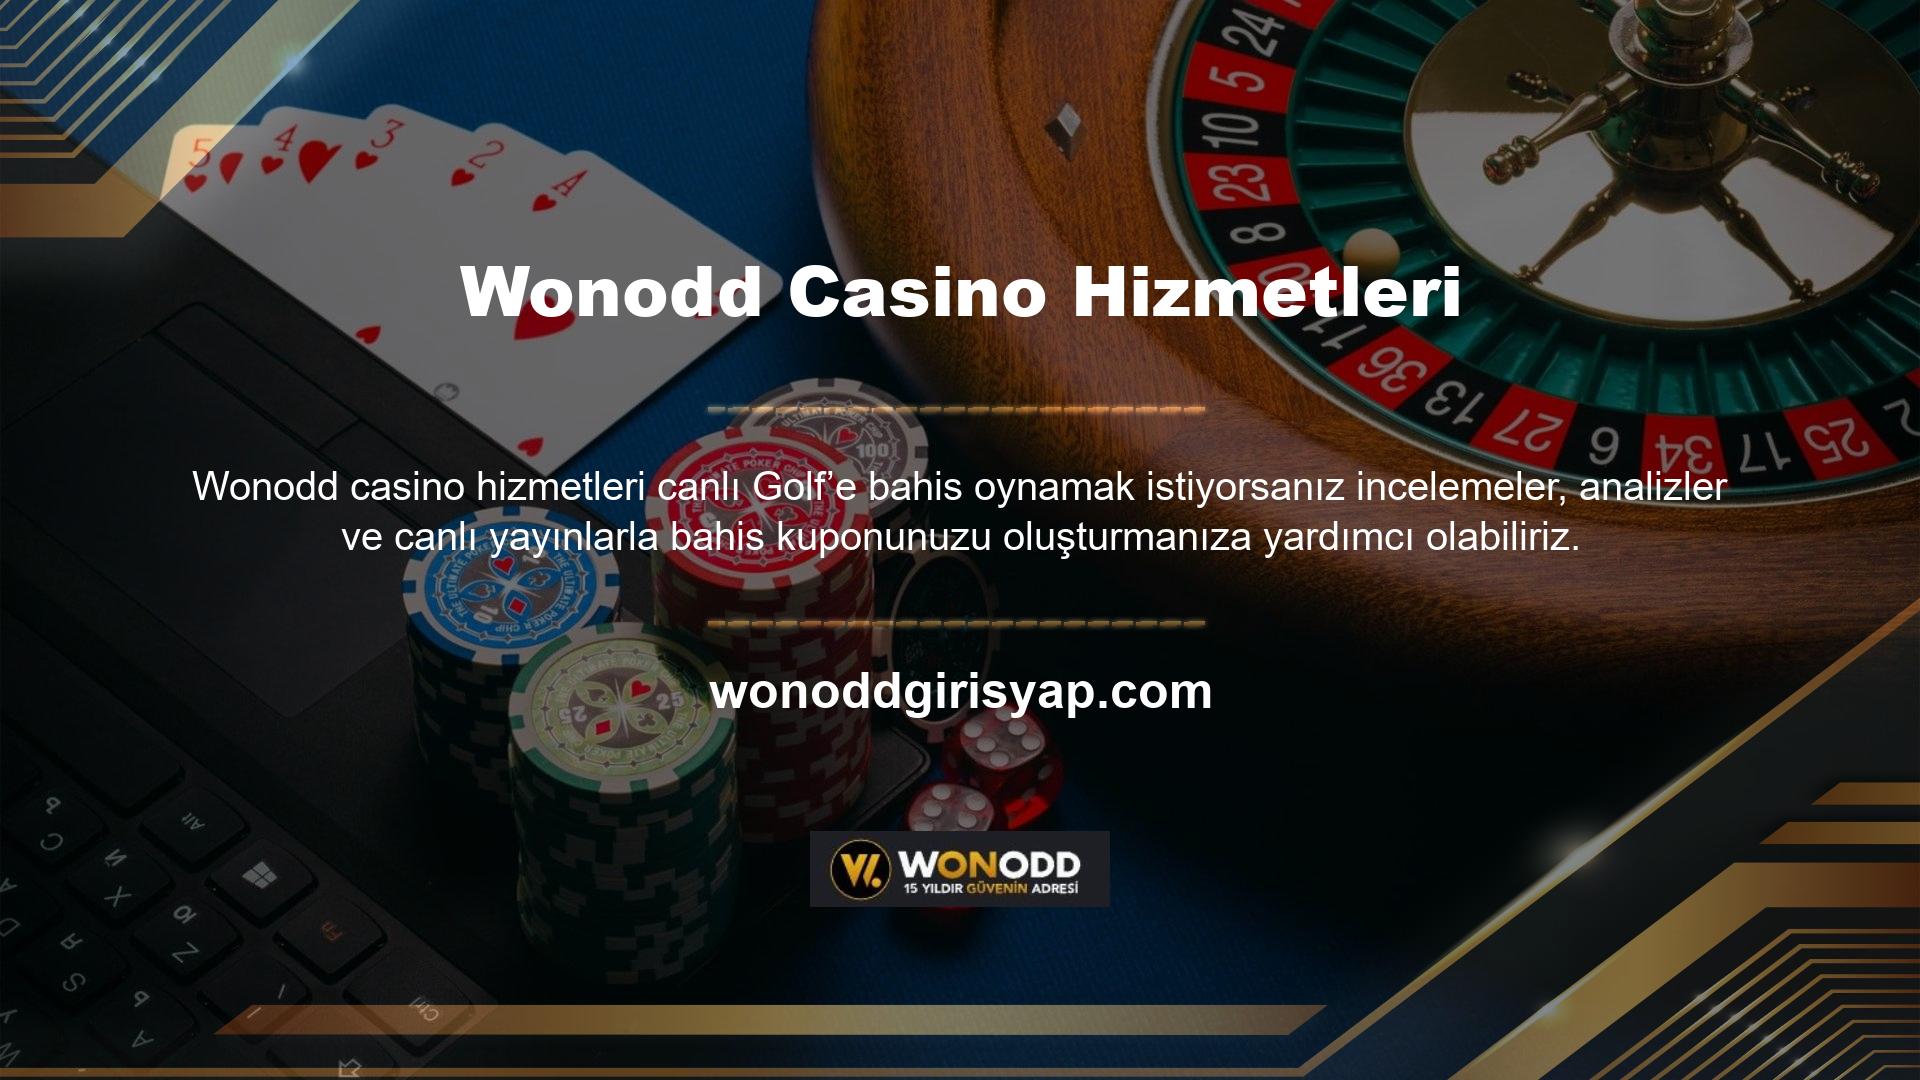 Wonodd Casino Hizmetlerinin TV seçeneği ile dünyanın dört bir yanından tüm spor karşılaşmalarını ücretsiz izlemeye hazır olun